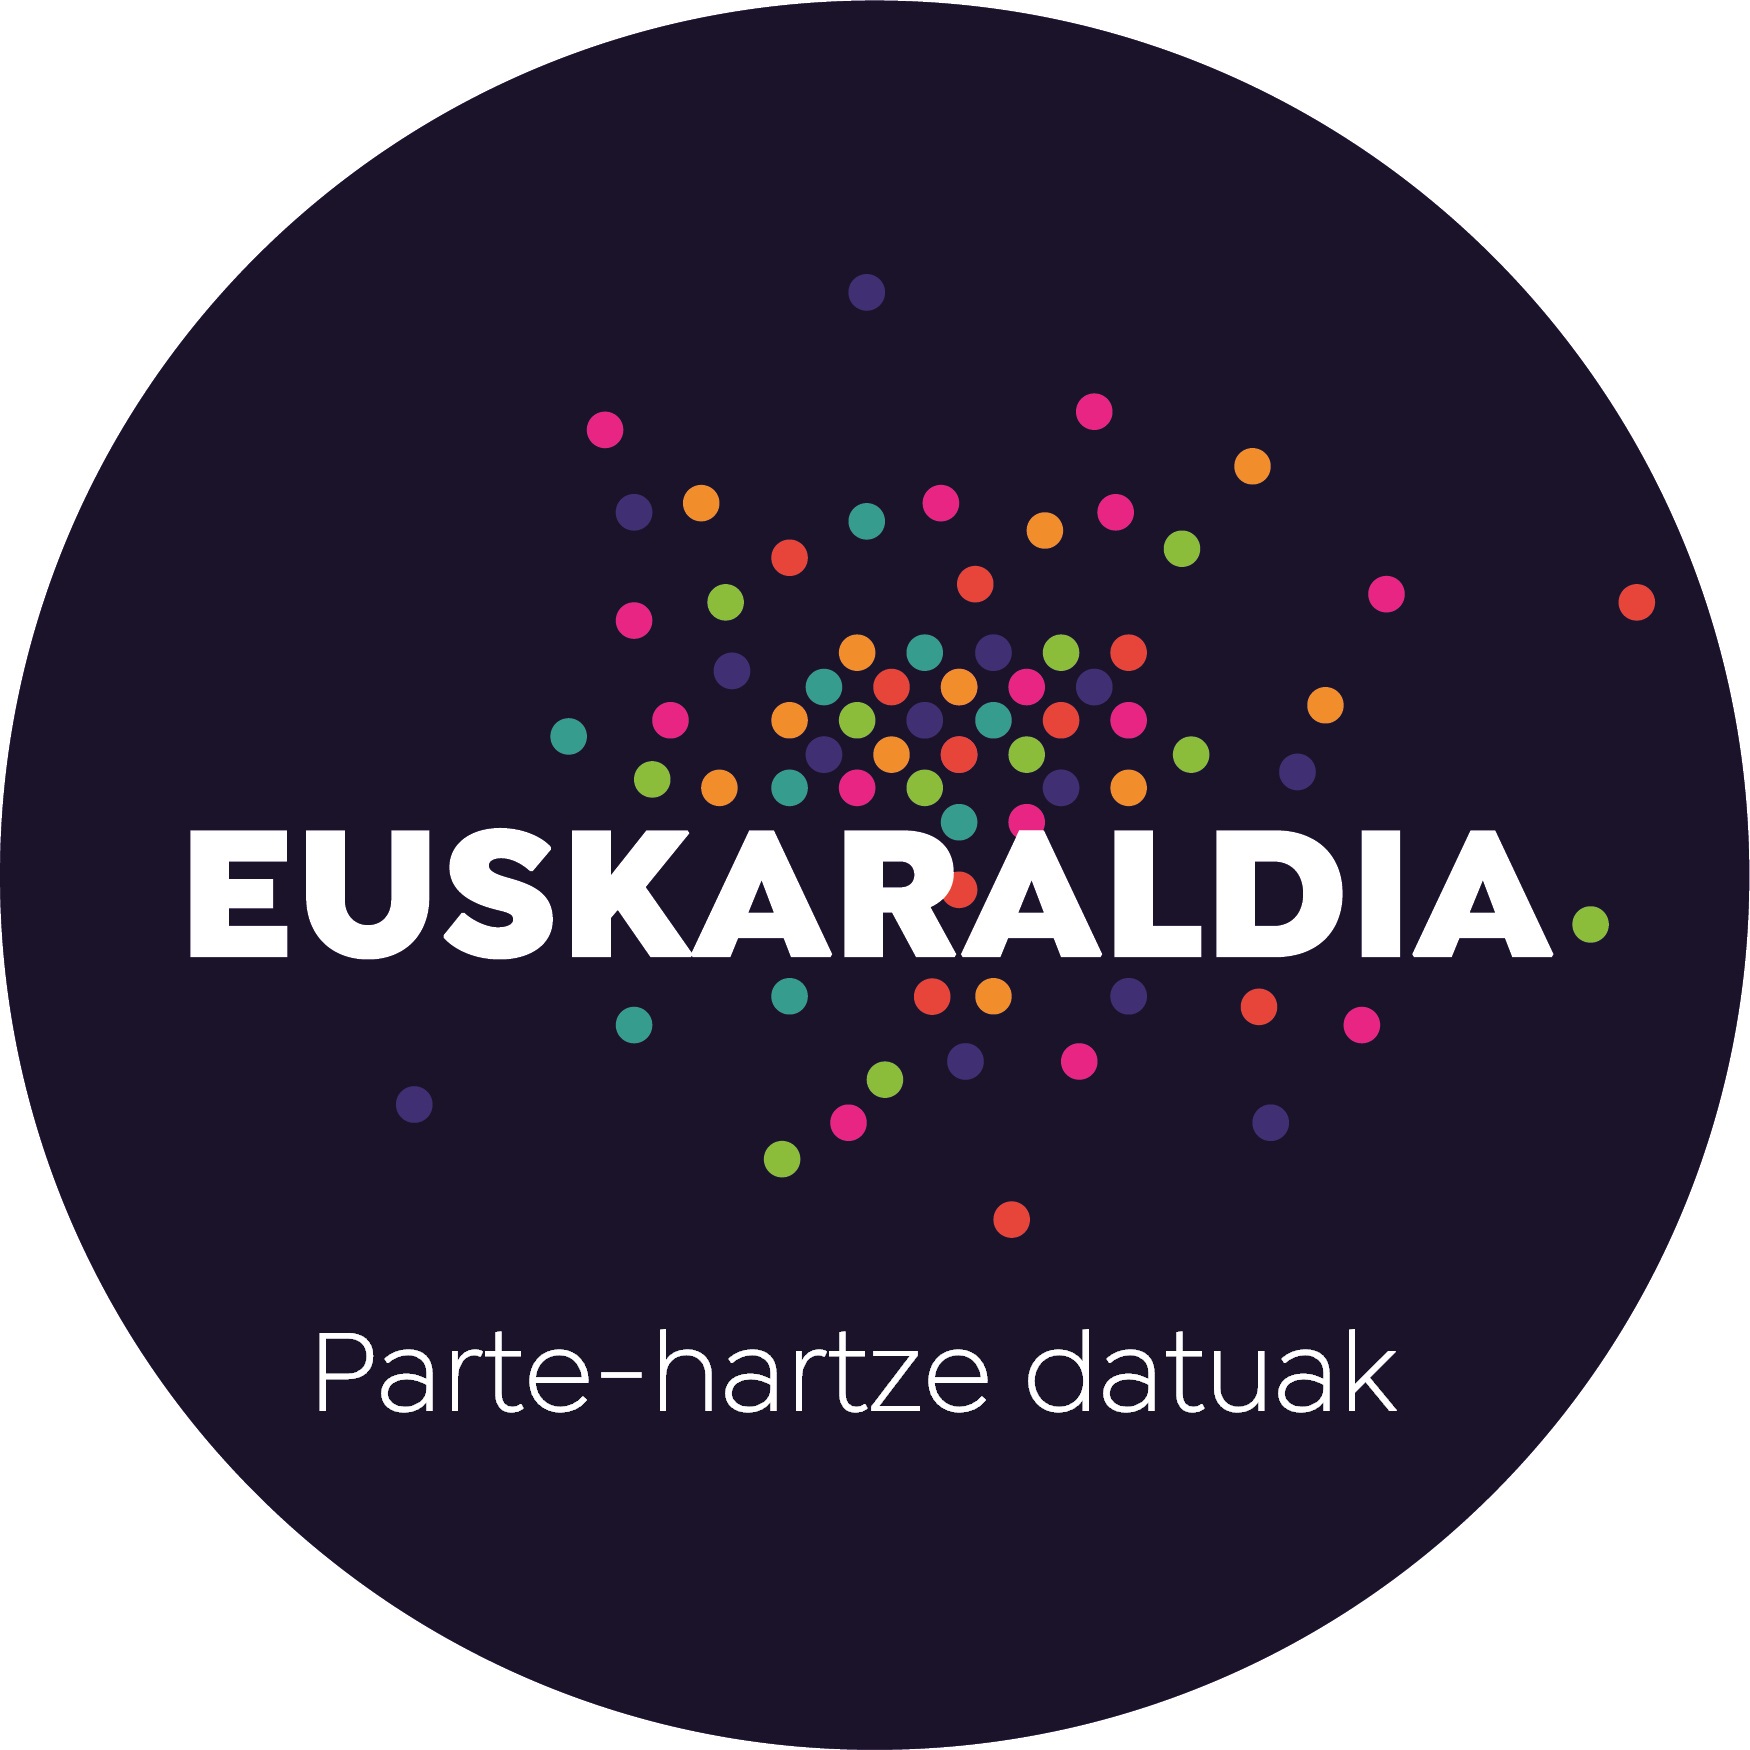 Euskaraldia. Datos de participación